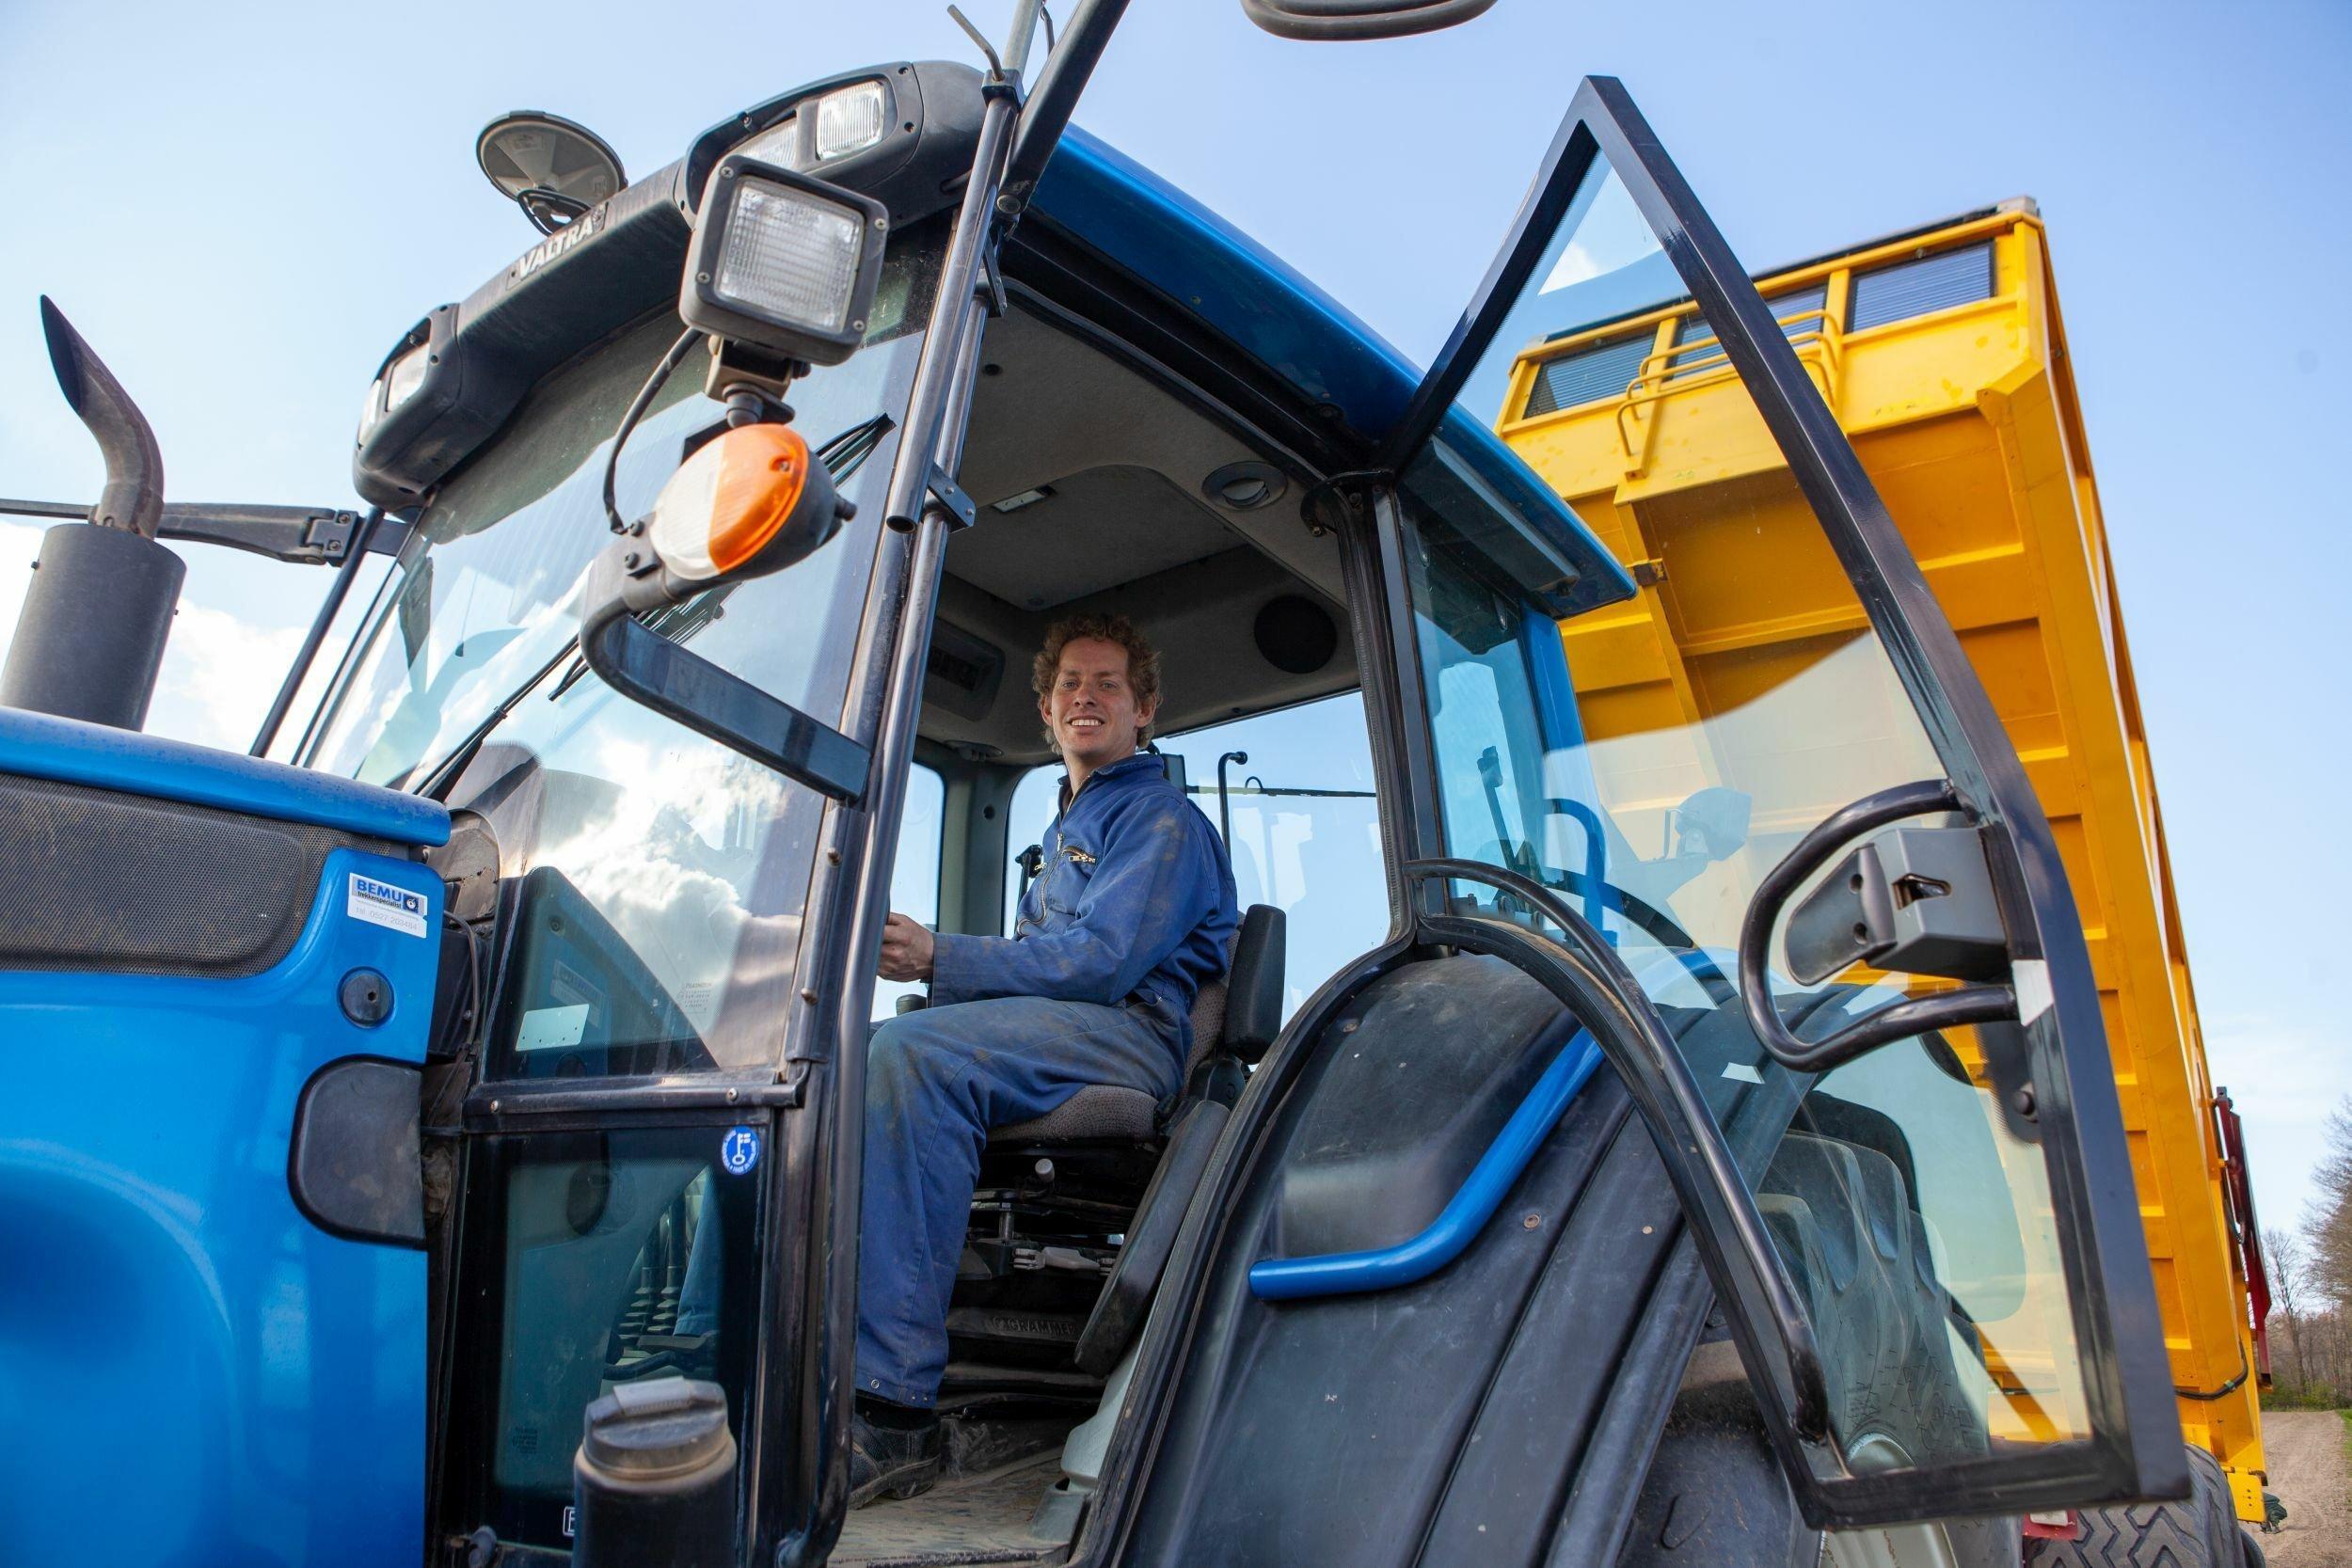 Ein grosser blauer Traktor mit einem gelben Kipplader. Auf dem Traktor ein rund 30-jähriger weisser Mann mit blonden Locken im blauen Overall.